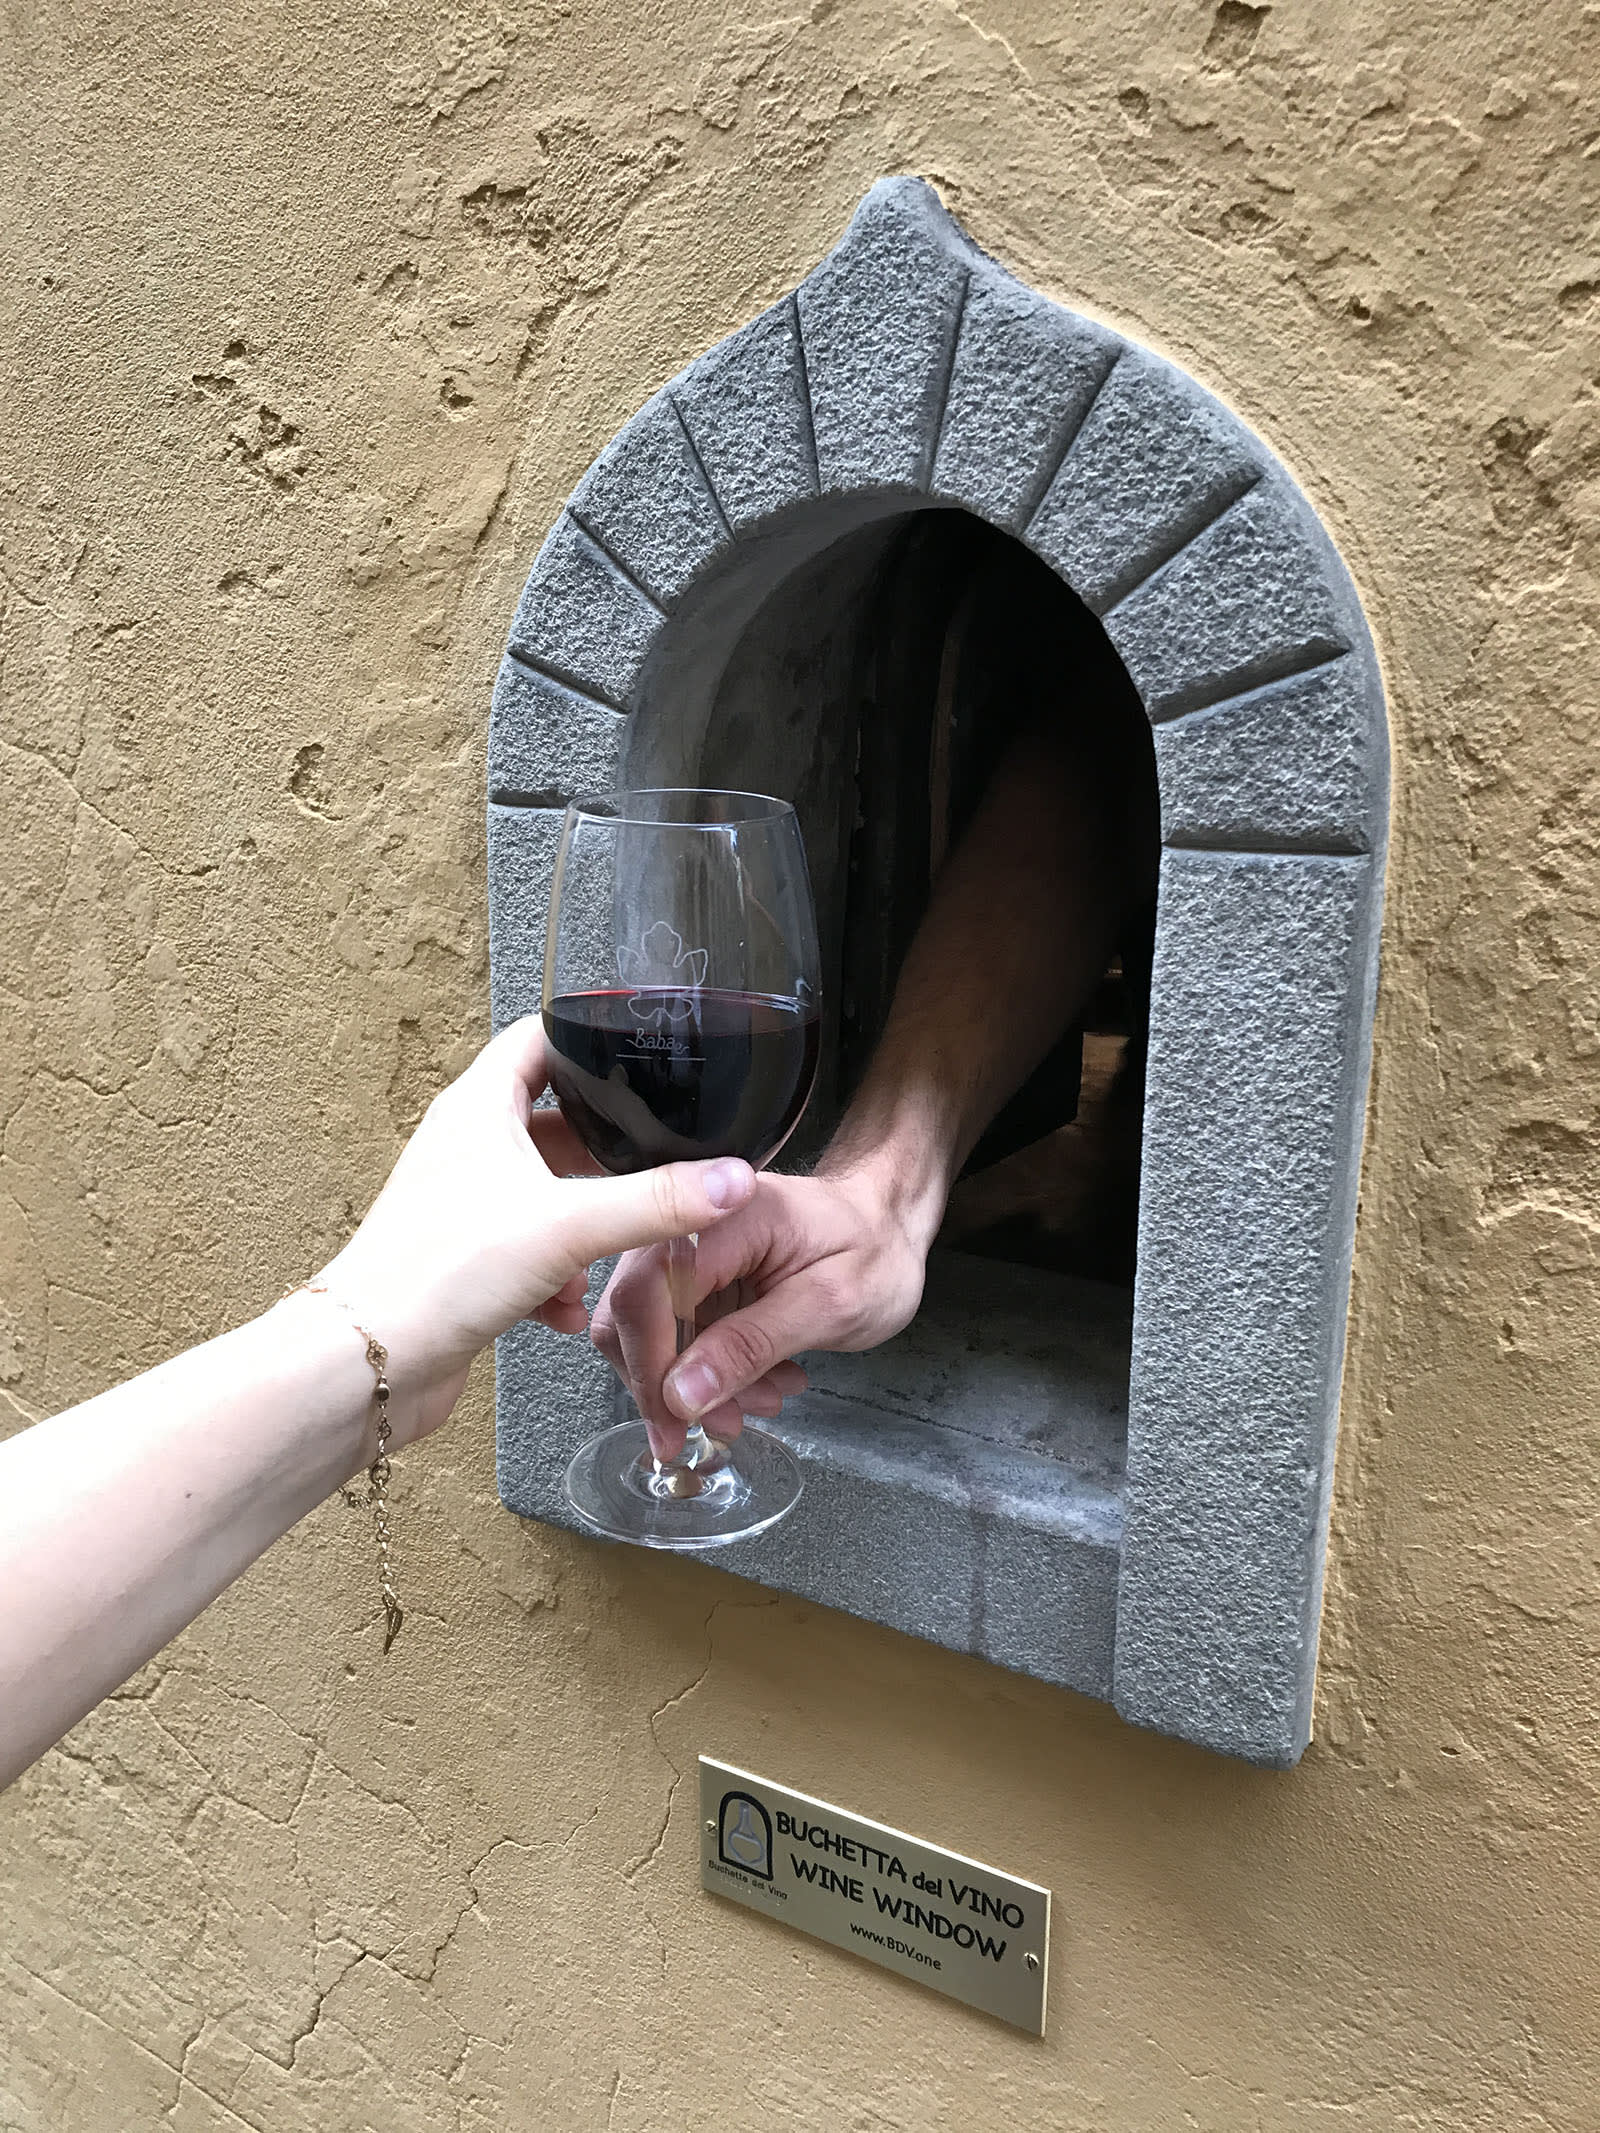 "نوافذ النبيذ" التاريخية في فلورنسا الإيطالية تفتح من جديد.. ما السبب؟